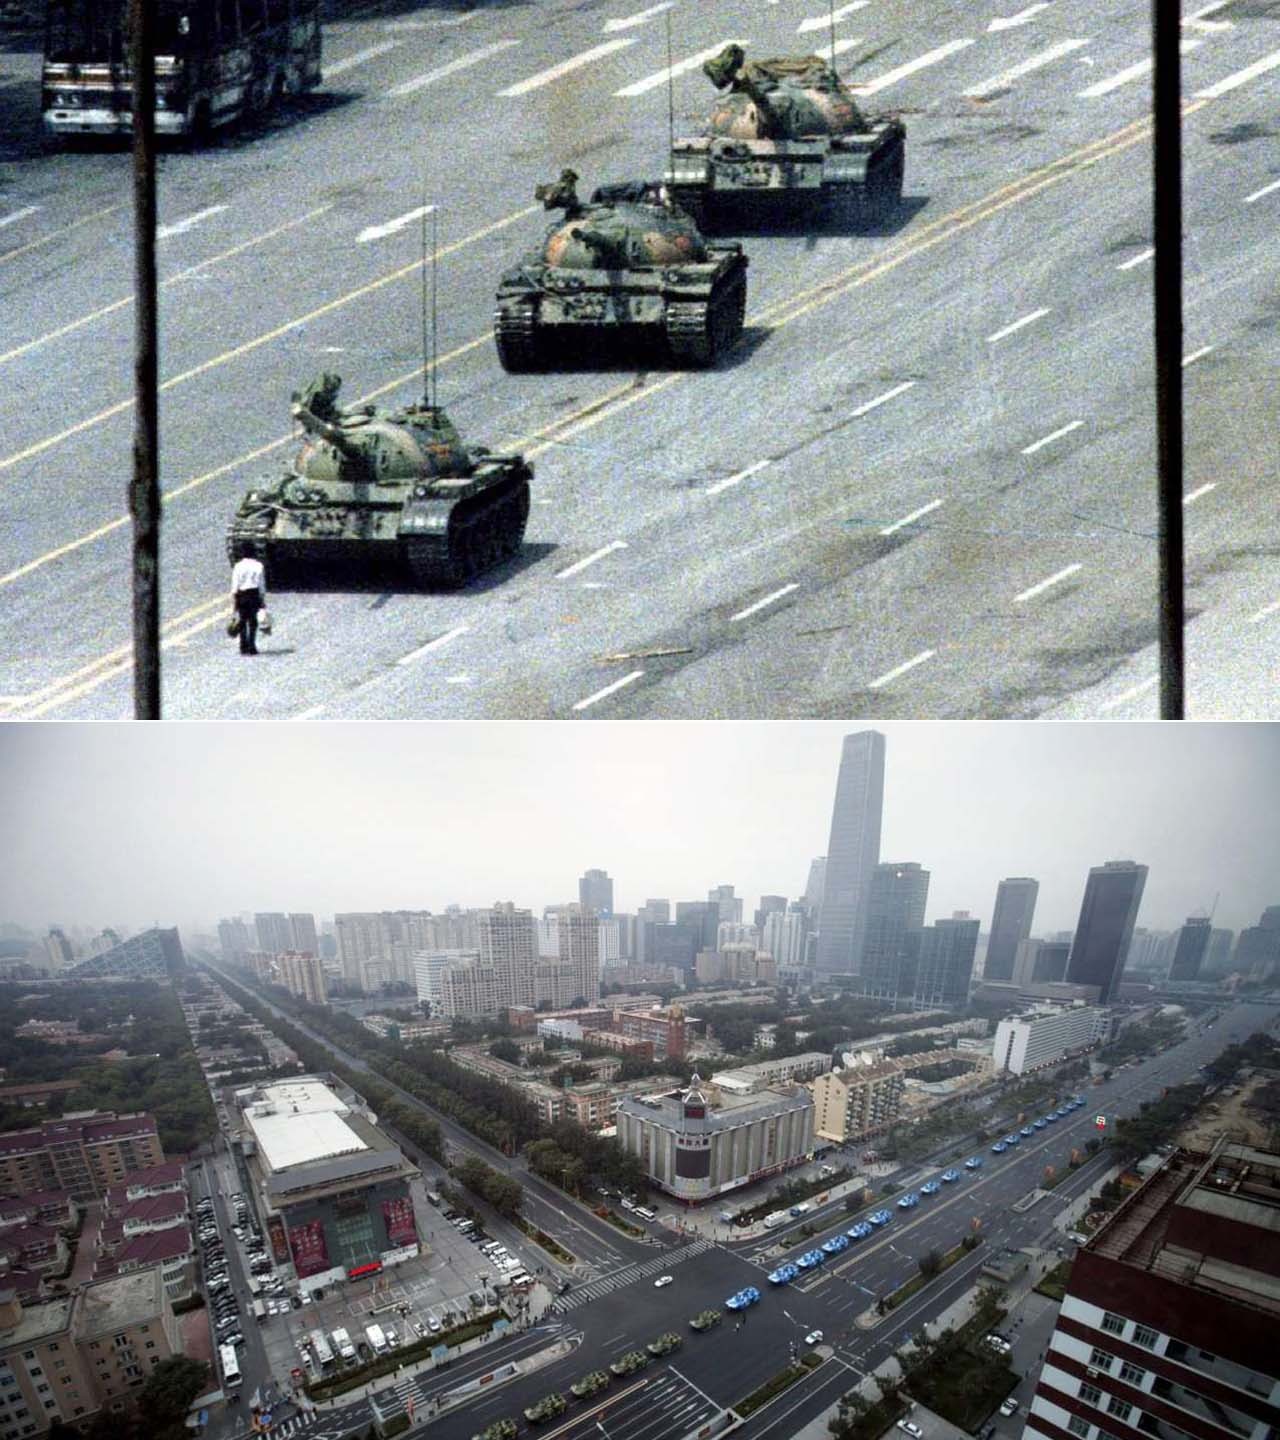 AYER Y HOY. Se cumplen 25 años de las protestas de la Plaza de Tiananmen, cuando el ejército abrió fuego y mató a un gran número de civiles desarmados. Entre el 15 de abril y el 4 de junio de 1989, protestaban contra el gobierno del Partido Comunista por represivo y corrupto, nunca se han publicado cifras oficiales de muertes. (REUTERS)
FOTOGALERÍA